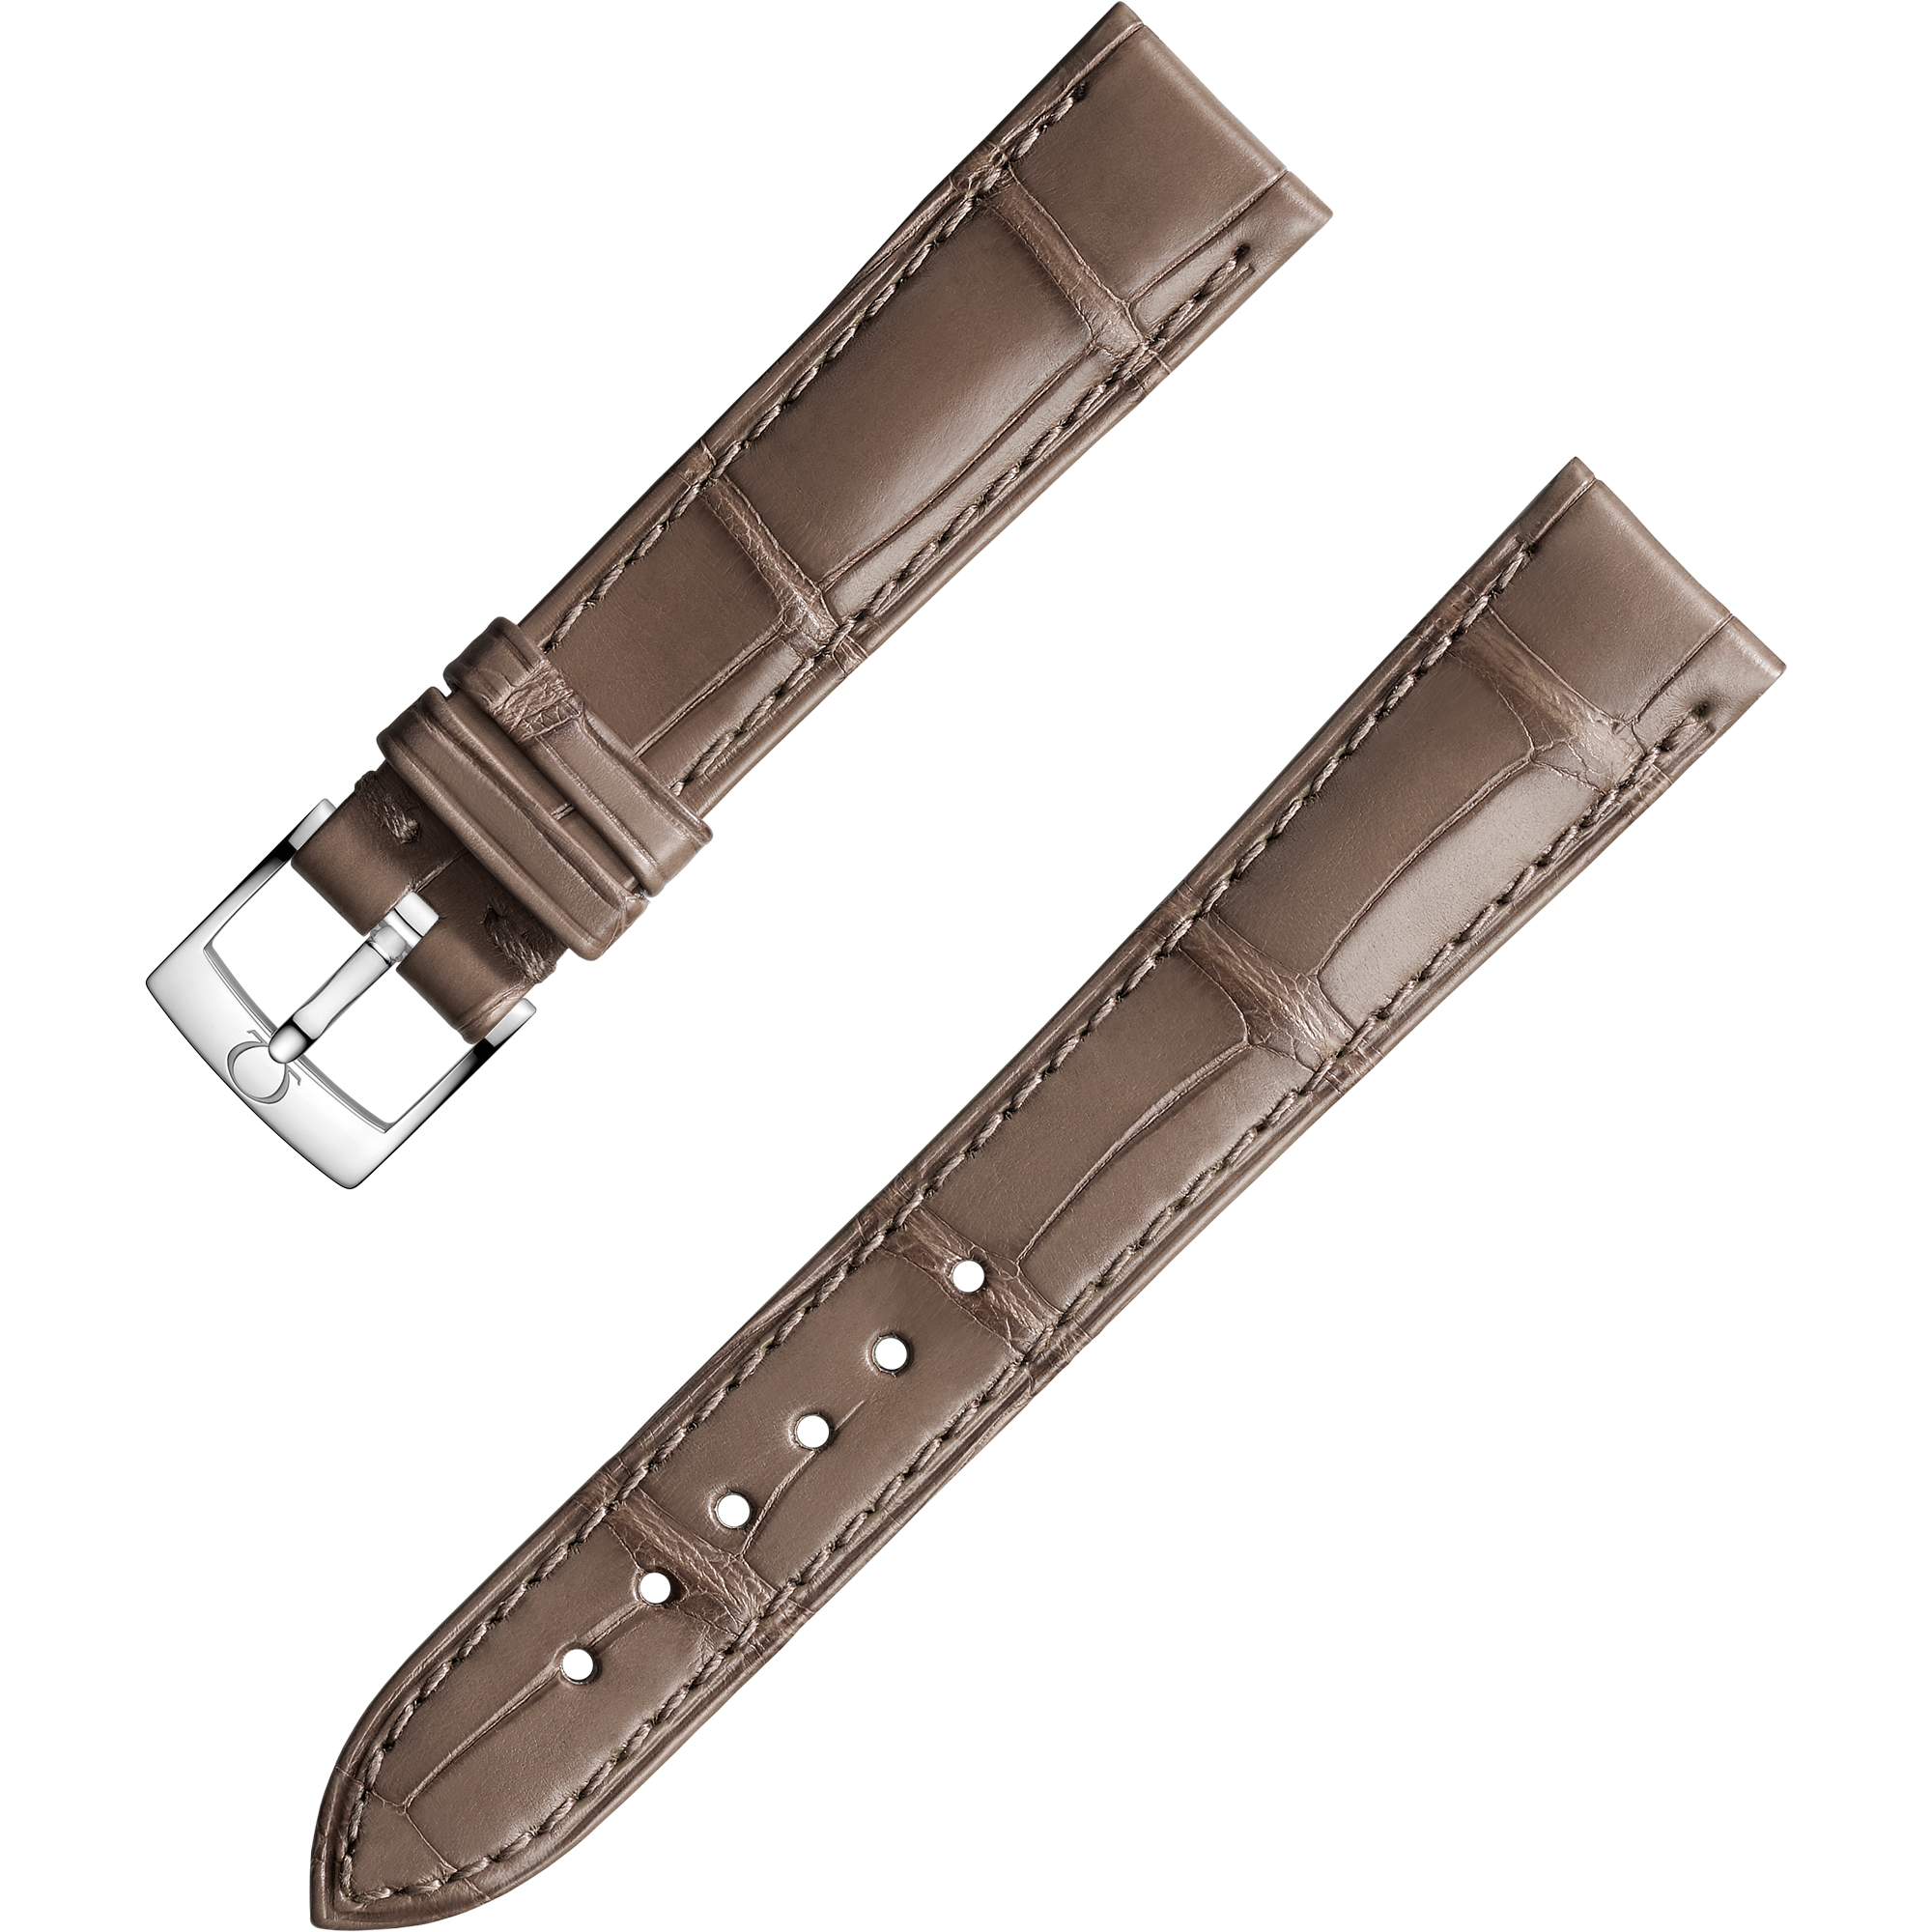 Bracelete de duas peças - Bracelete castanha-cinzento em pele de crocodilo com fivela de pino - 032CUZ004800